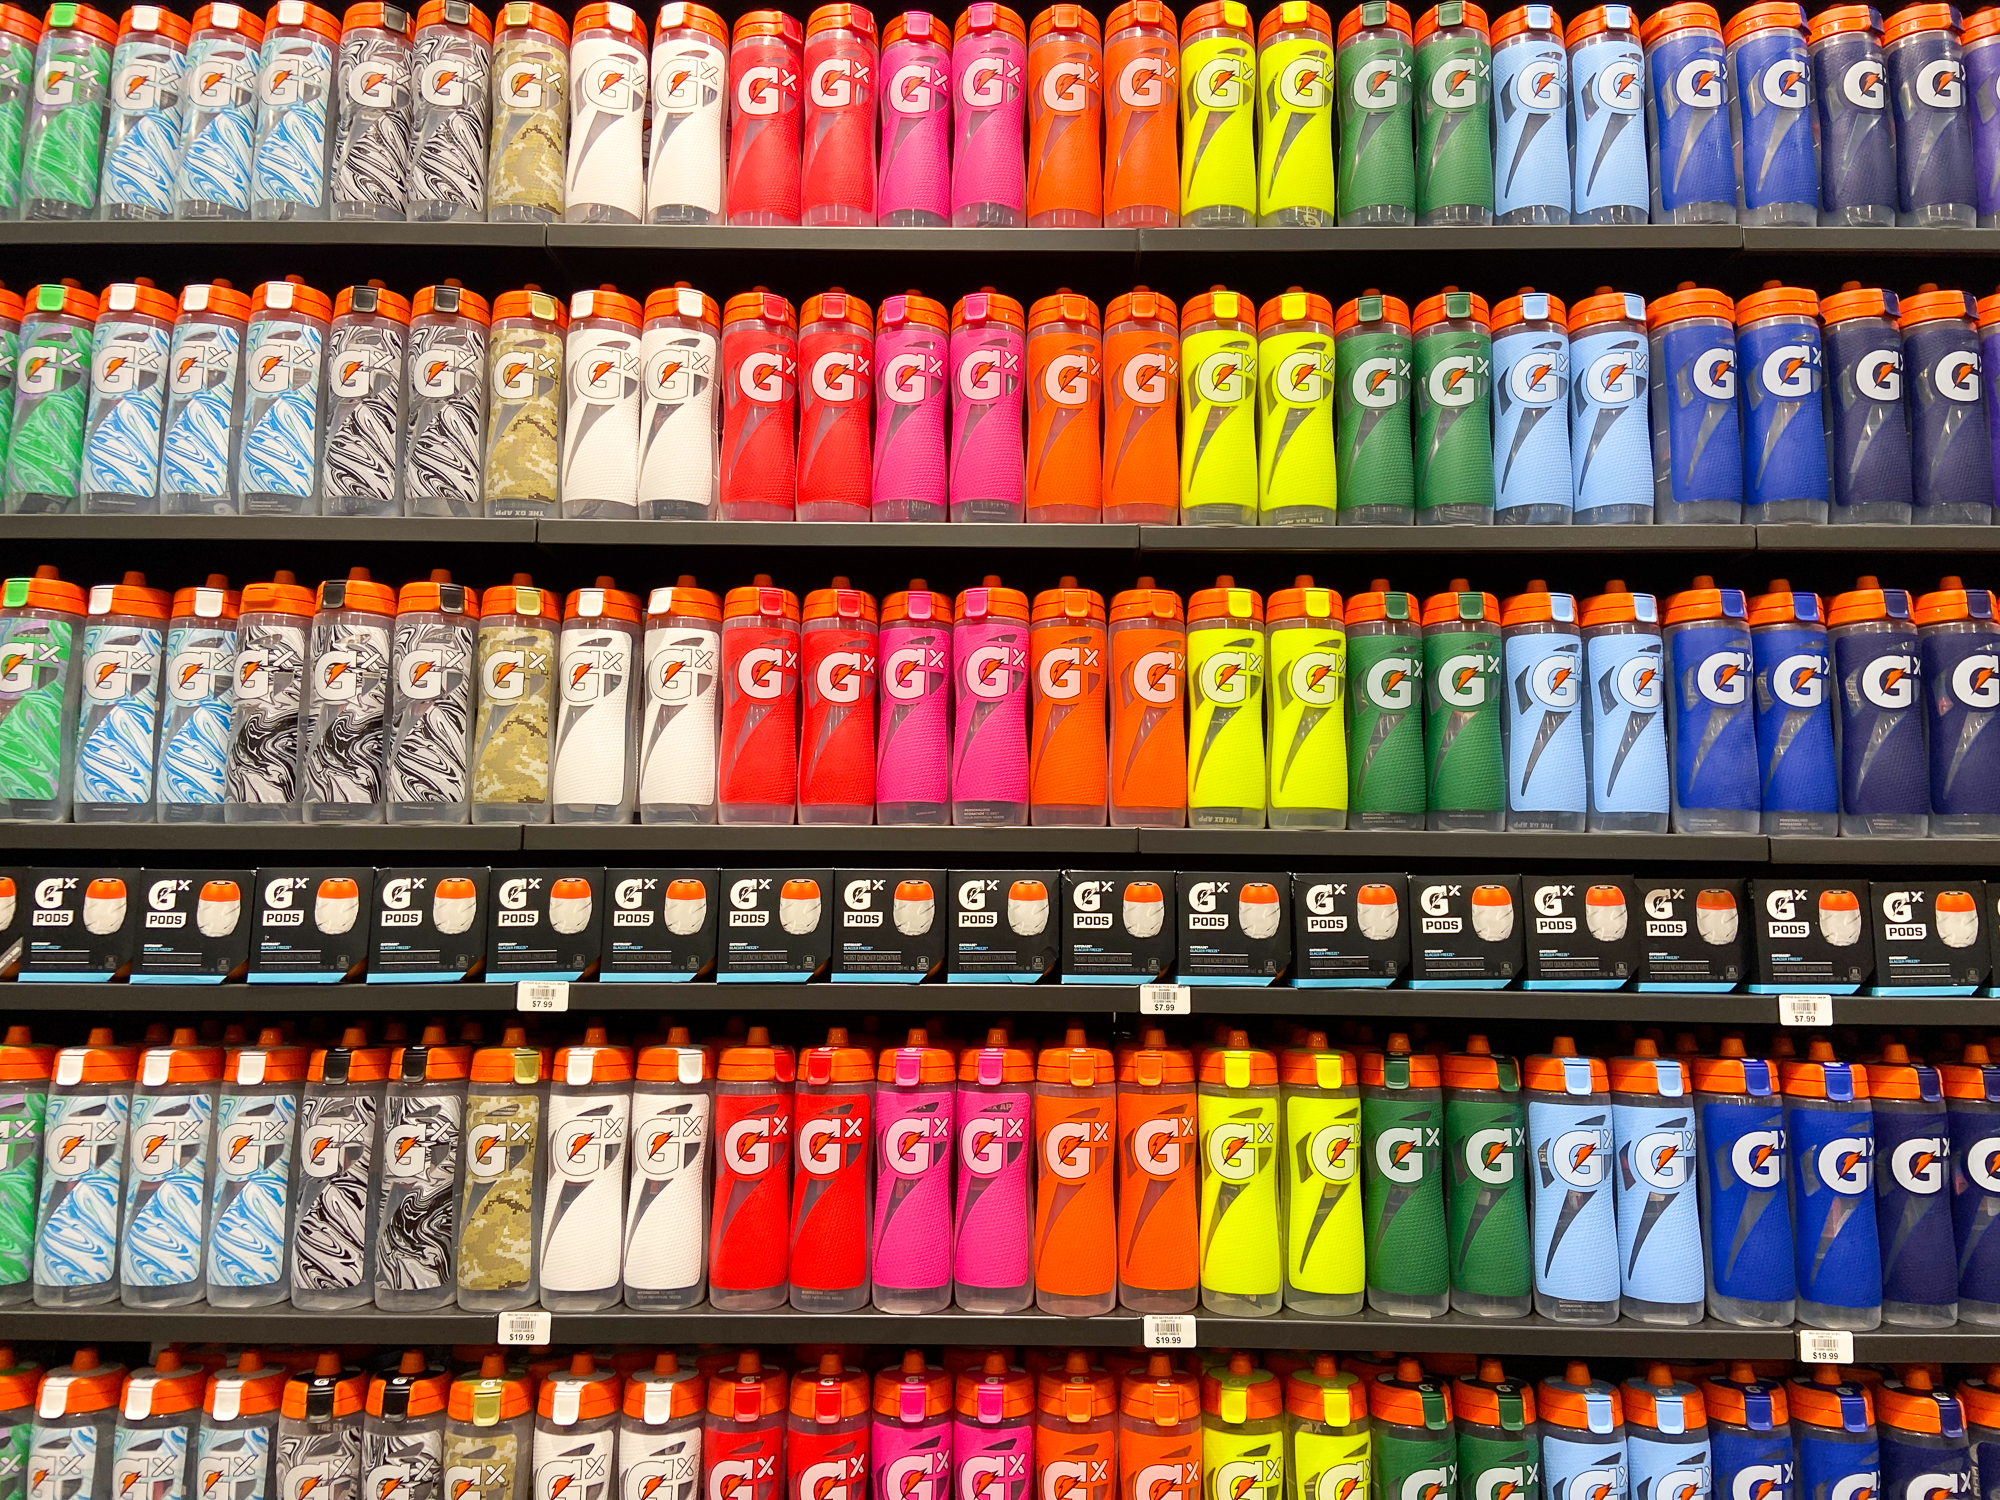 wall of gatorade bottles